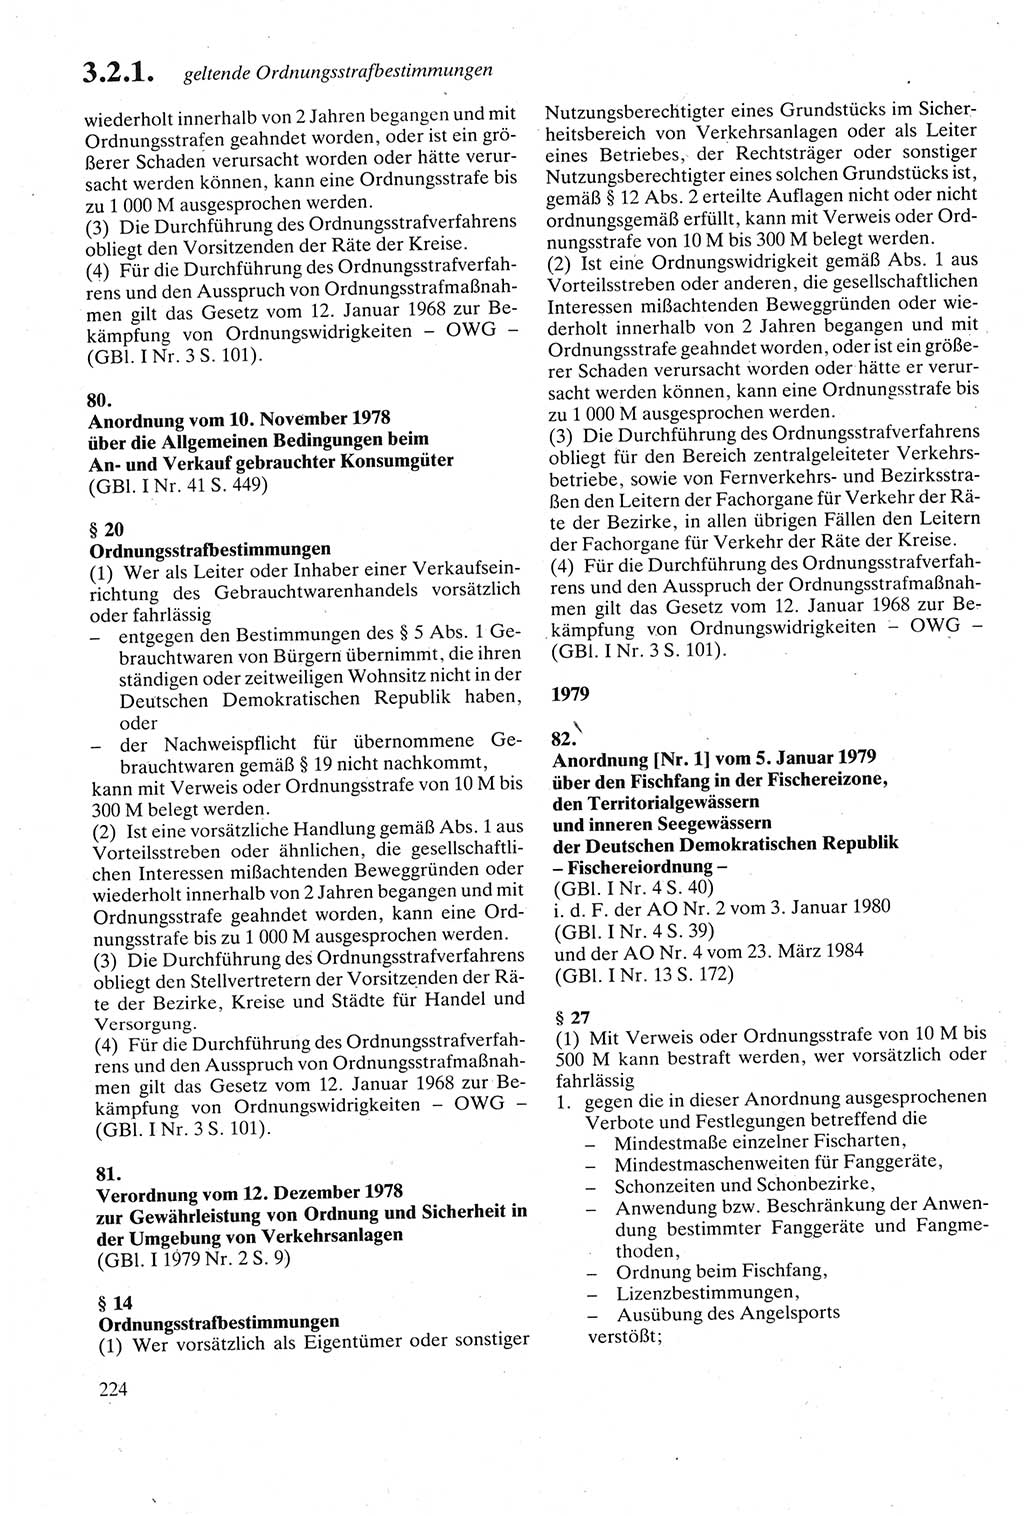 Strafgesetzbuch (StGB) der Deutschen Demokratischen Republik (DDR) sowie angrenzende Gesetze und Bestimmungen 1979, Seite 224 (StGB DDR Ges. Best. 1979, S. 224)